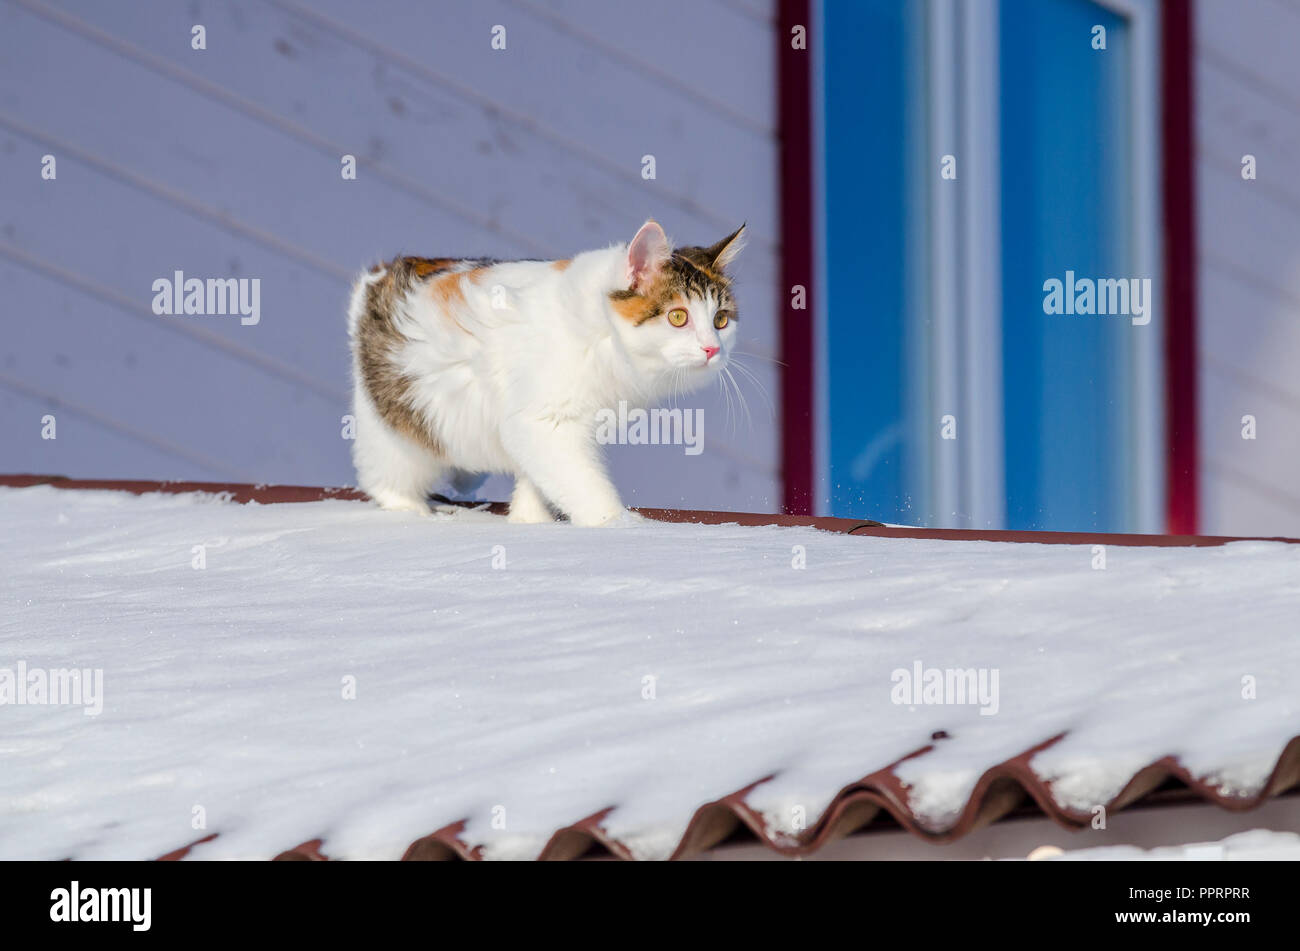 Beau chat calico marche sur toit de la maison de neige Kitty se glisse sur le toit on a sunny day noël givré Banque D'Images